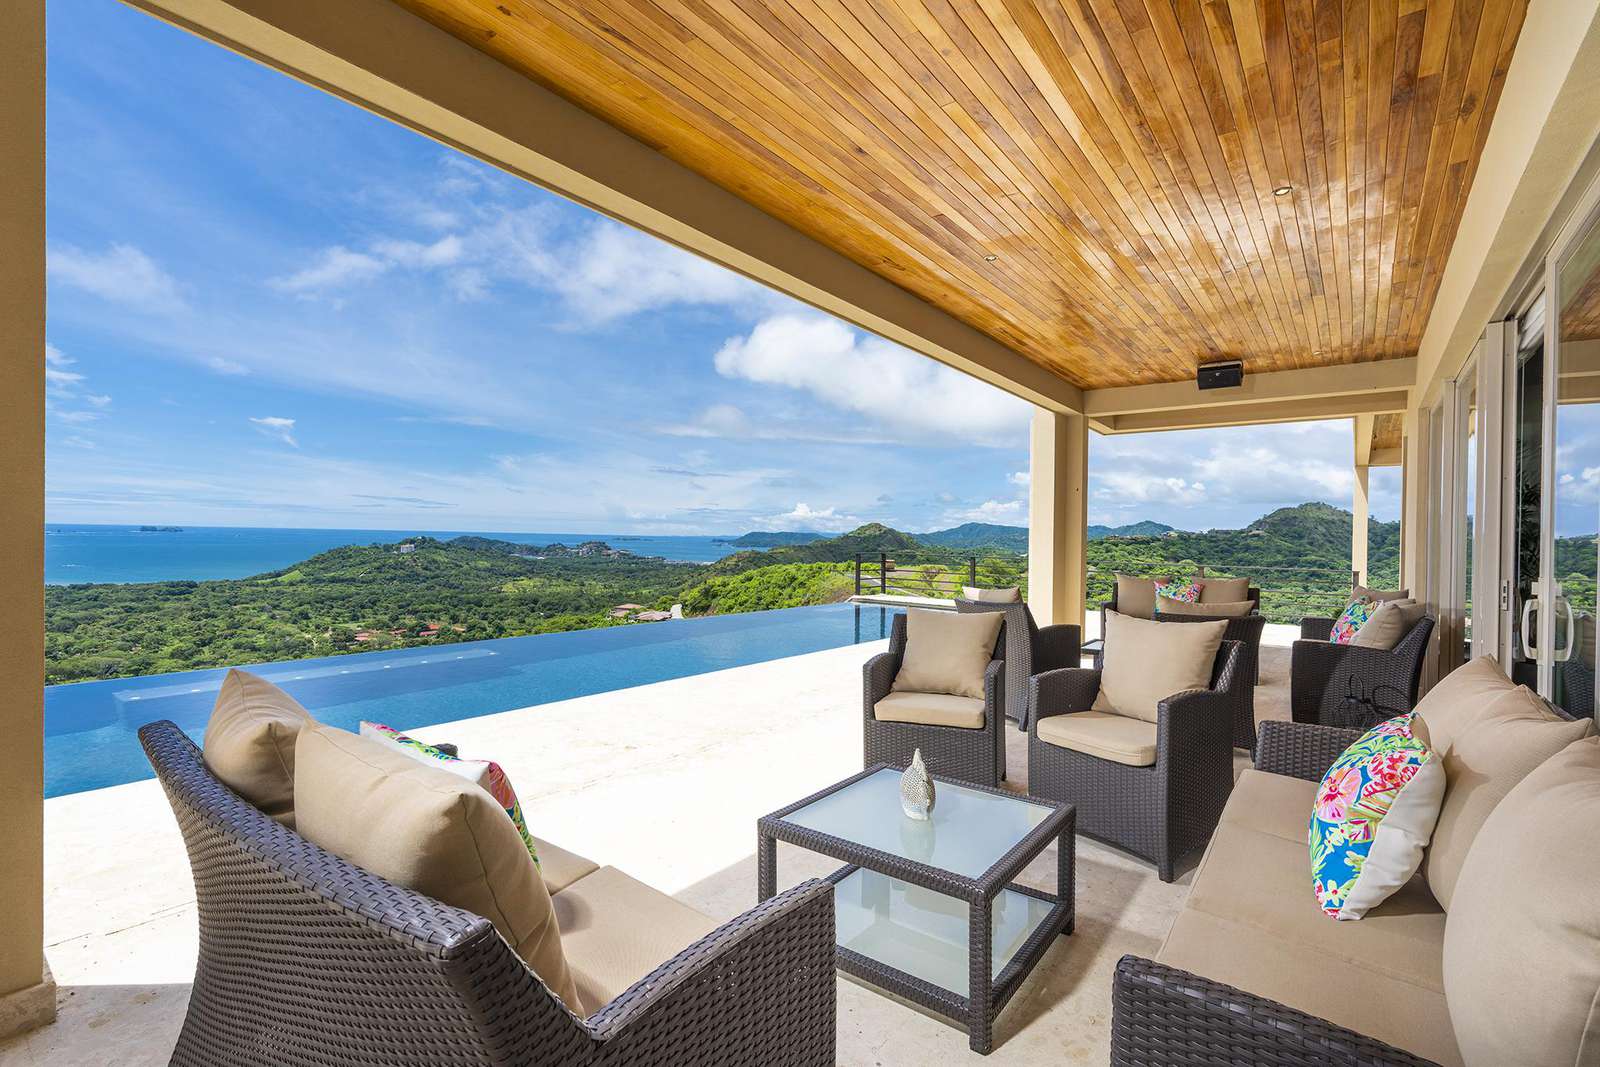 Casa Vista del Rey oceanview luxury vacation home